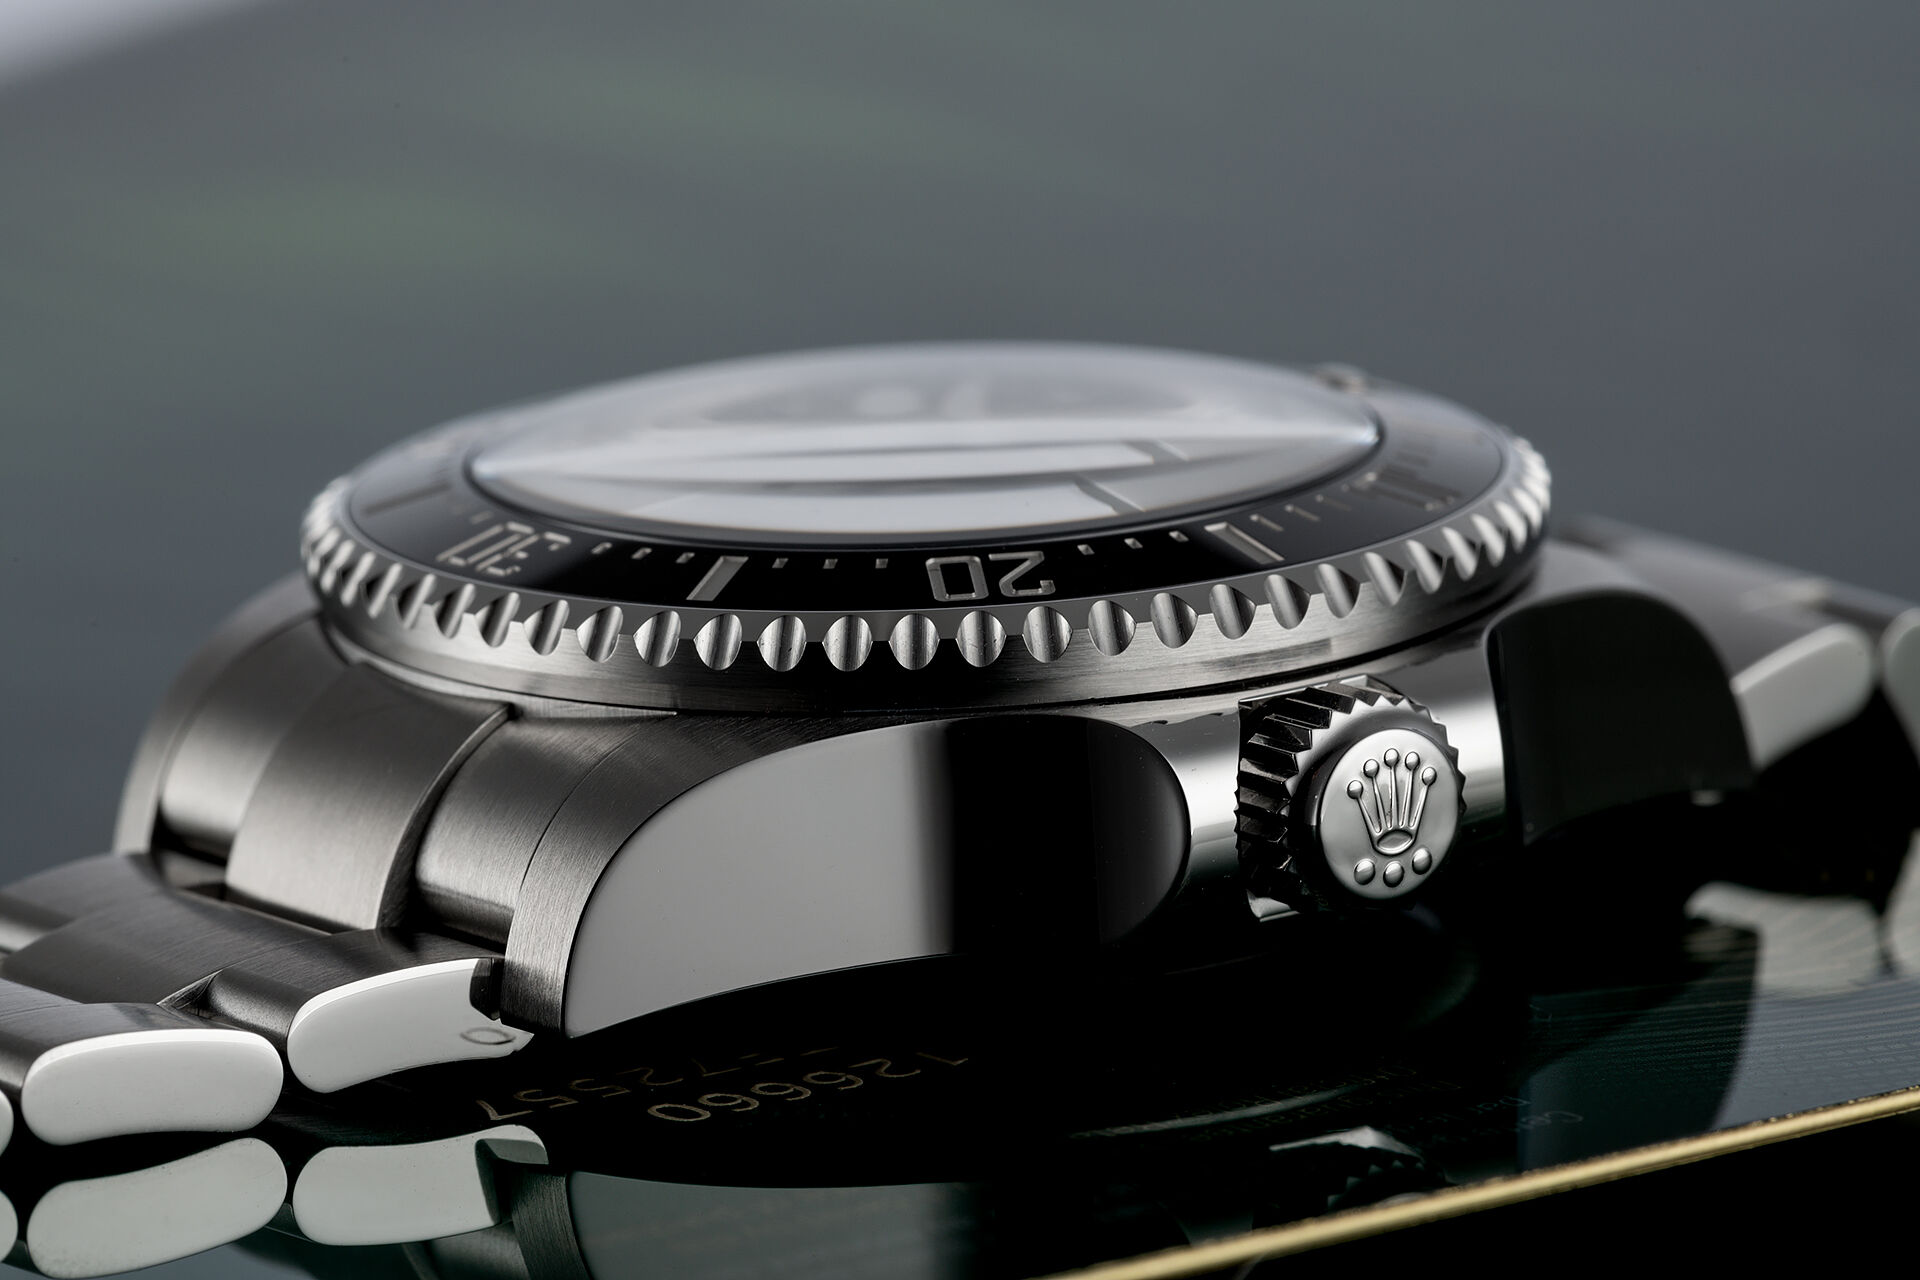 ref 126660 | 5 Year Rolex Warranty | Rolex Sea-Dweller Deepsea